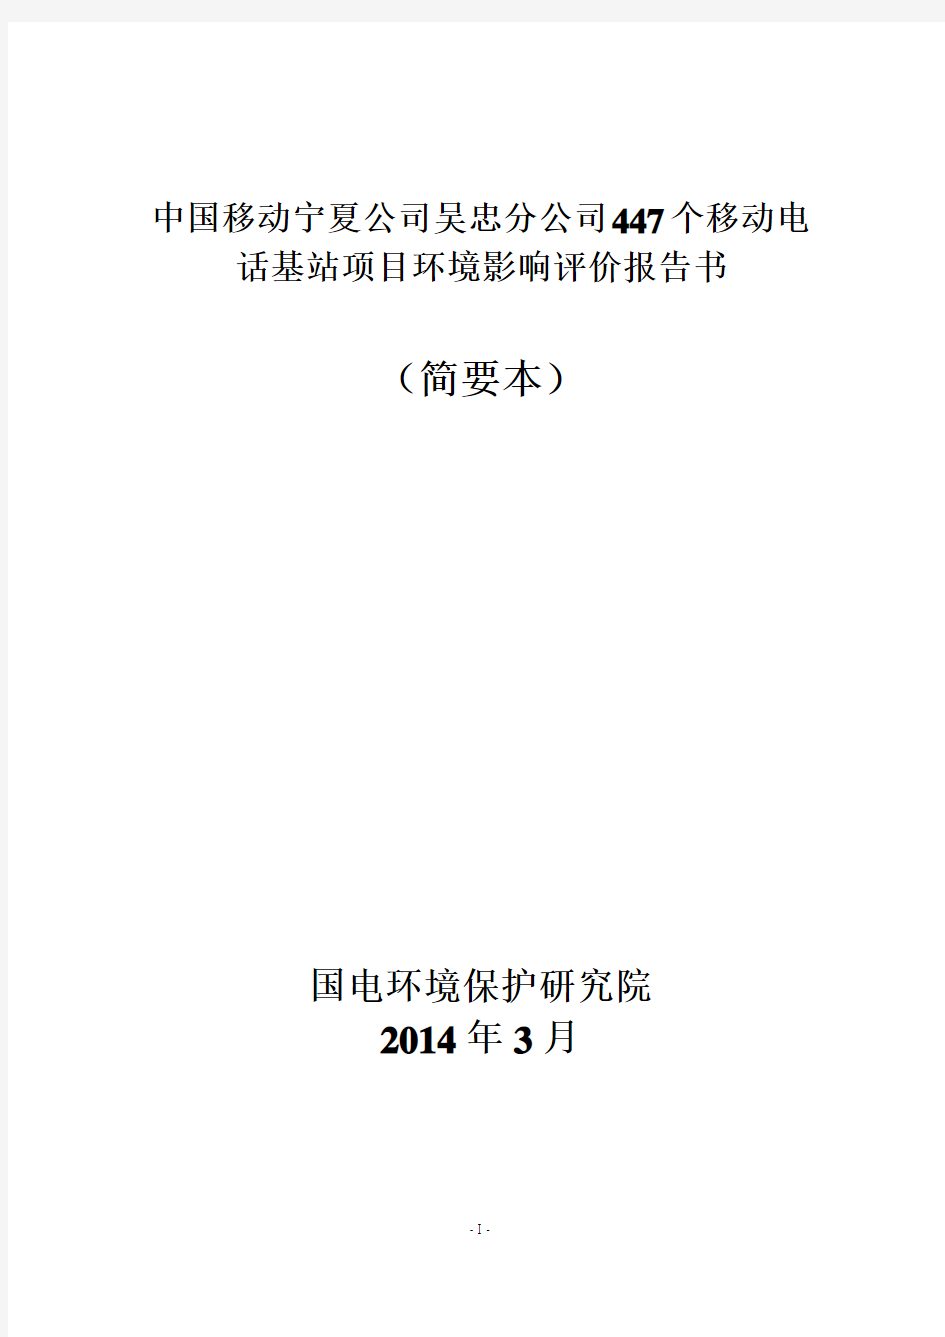 中国移动宁夏公司吴忠分公司447个移动电话基站项目环境影响评价